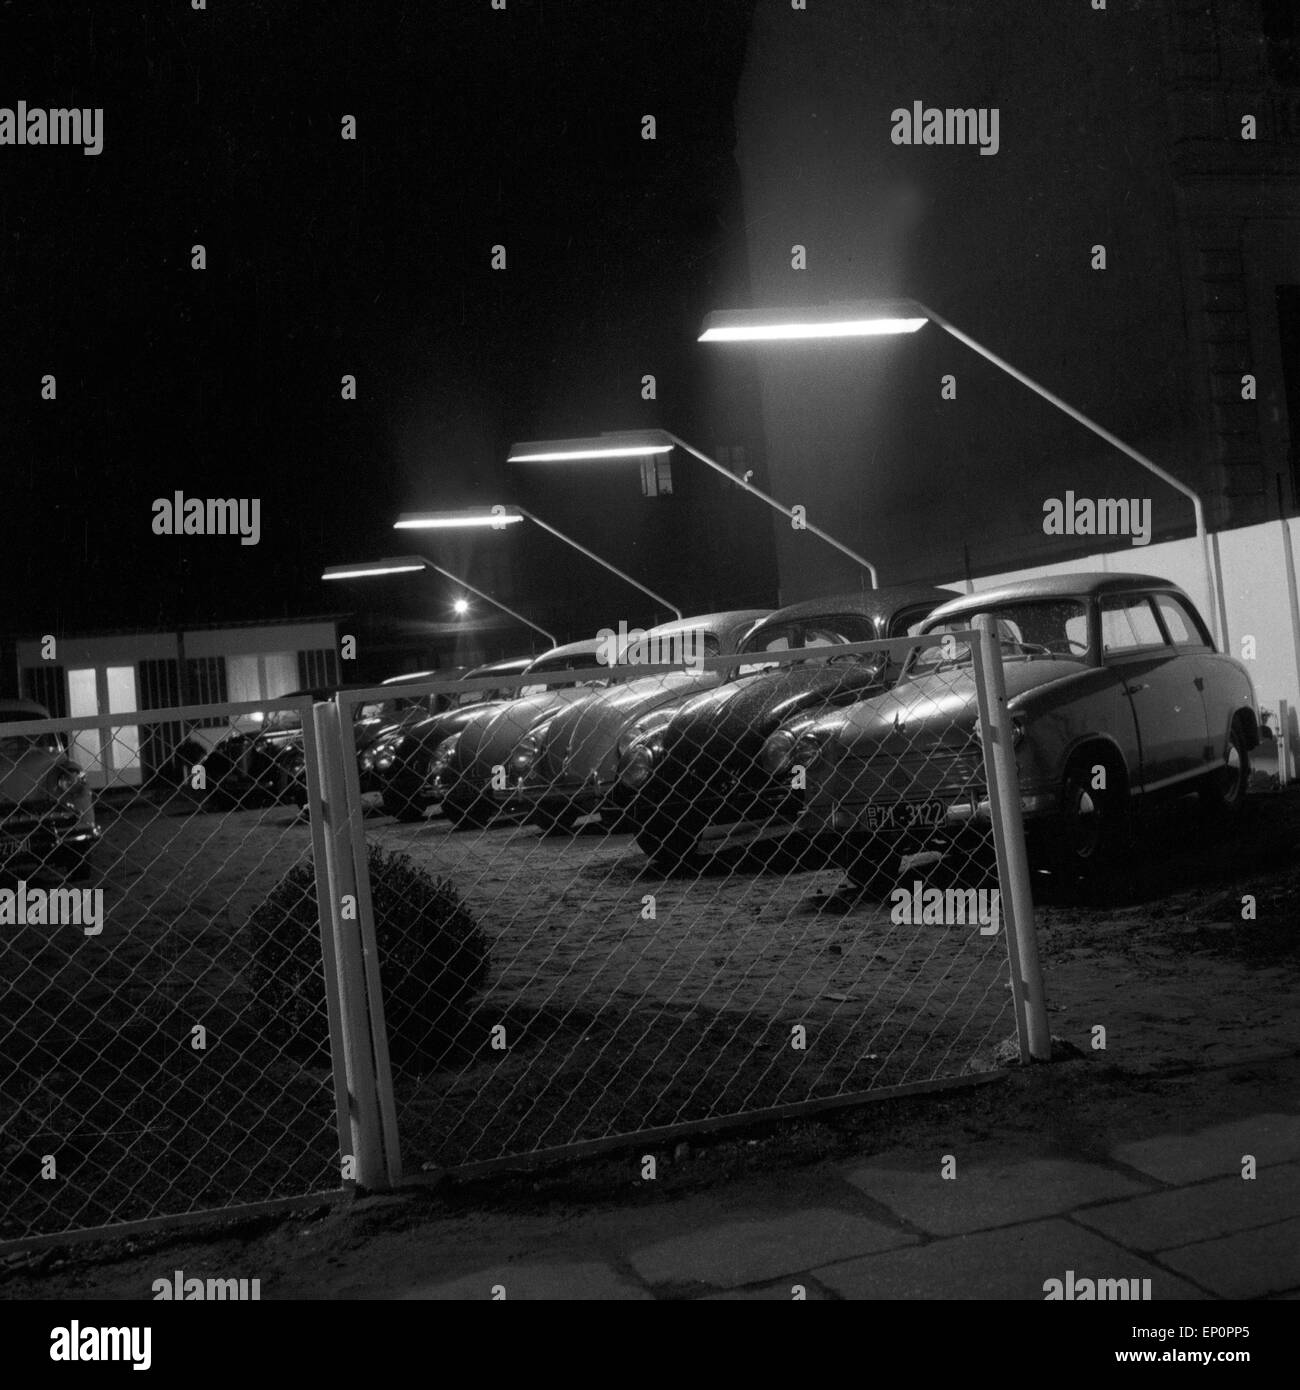 Das Angebot eines Gebrauchtwagenhändlers in der Weidenallee in Hamburg bei Nacht, 1954. Cars at a second hand car shop by night Stock Photo